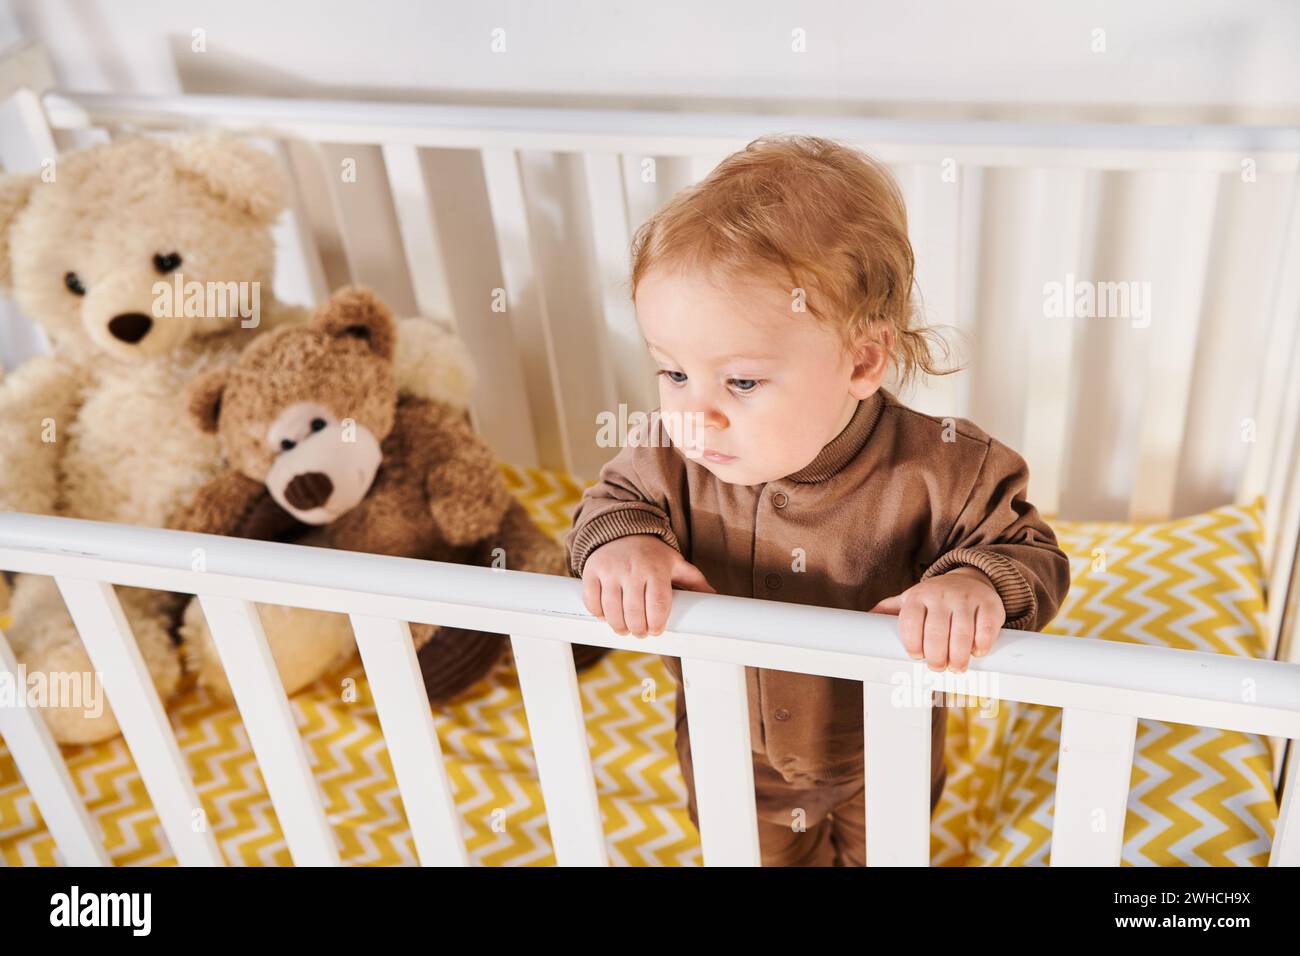 Hochwinkelansicht des kleinen Jungen im Strampler, der im Kinderbett in der Nähe von Kuschelspielzeug im Kinderzimmer steht Stockfoto